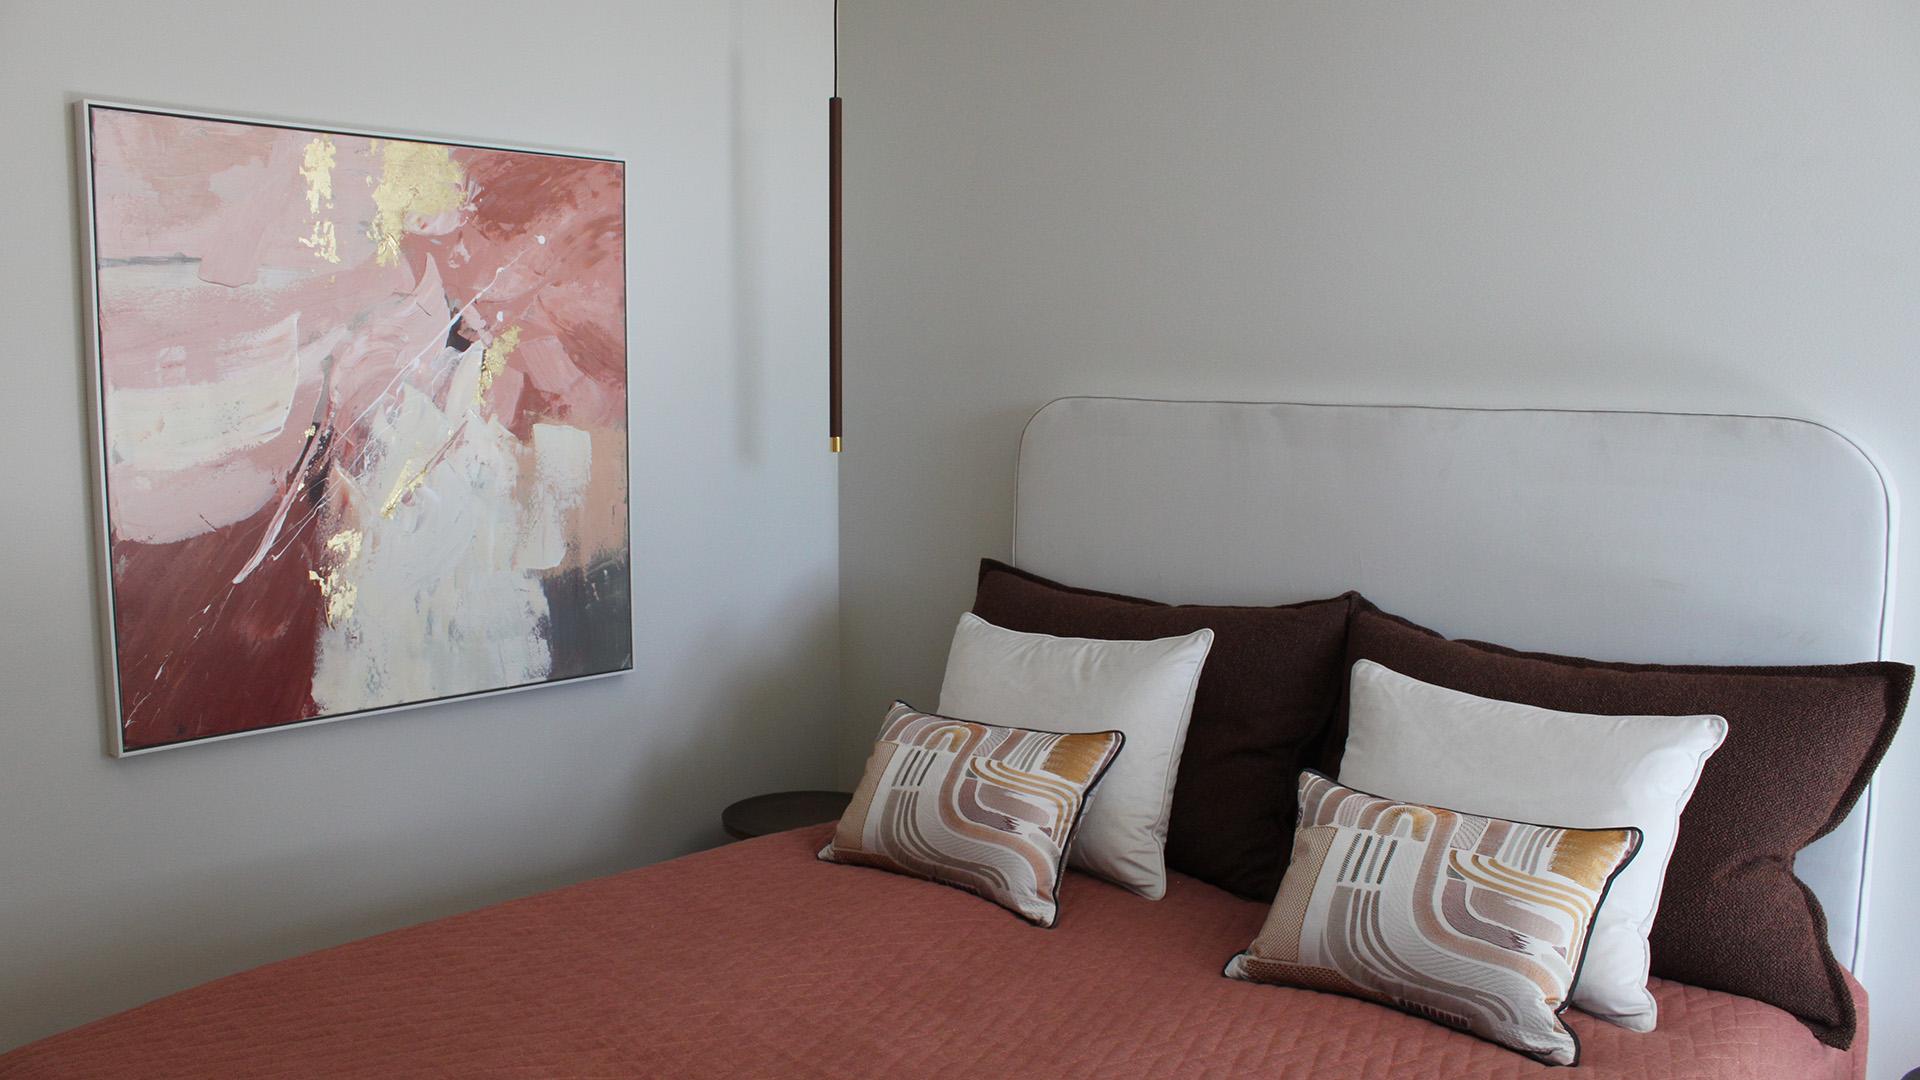 Naantalin asuntomessujen kohteessa 21 Lounatuulen Tiiran makuuhuoneen värit oli otettu seinällä olevasta taulusta. Taulun värit toistuvat vuodevaatteissa sekä sängyn molemminpuolin roikkuvissa valaisimissa.